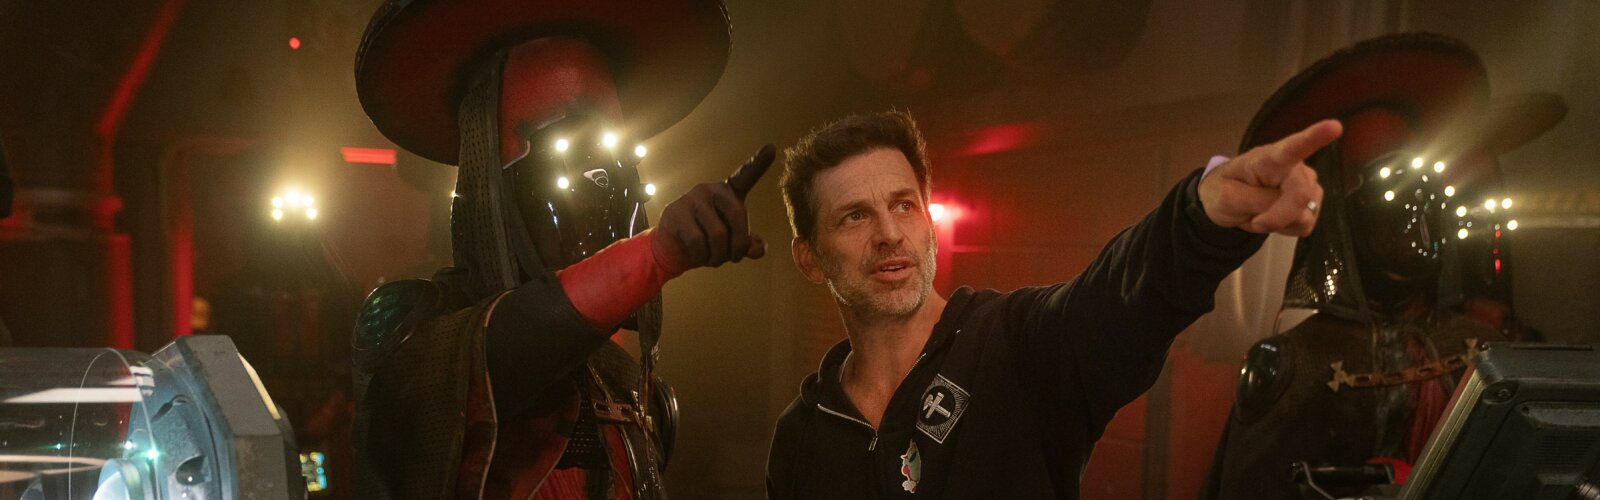 Regisseur Zack Snyder während der Dreharbeiten zum Netflix-Film Ebel Moon.